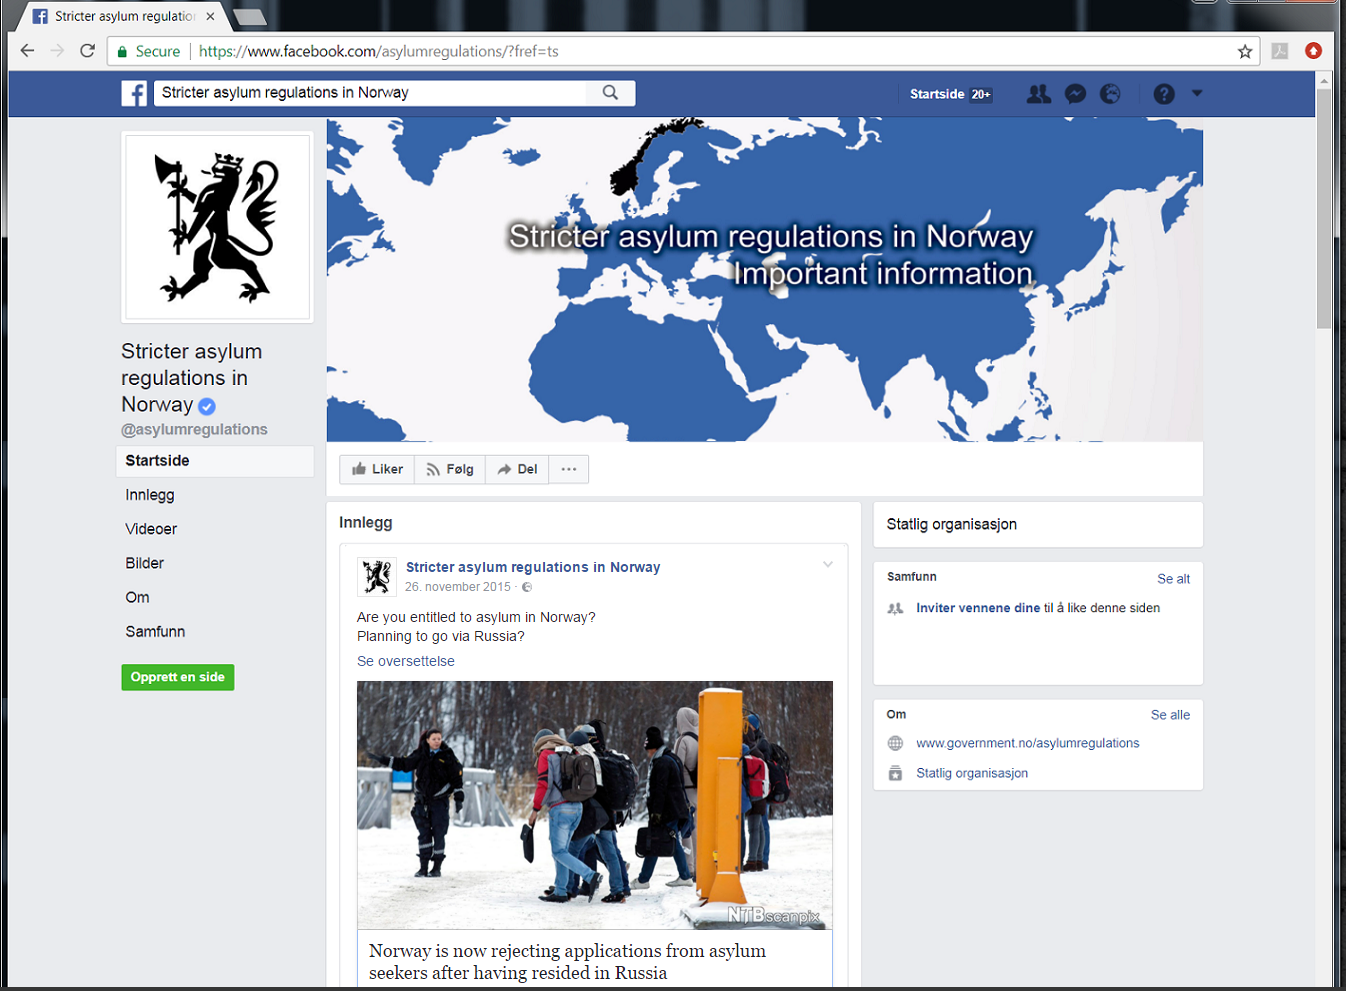 Skjermdump fra Facebook-siden for "Stricter asylum regulations in Norway", ved Justis- og beredskapsdepartementet.